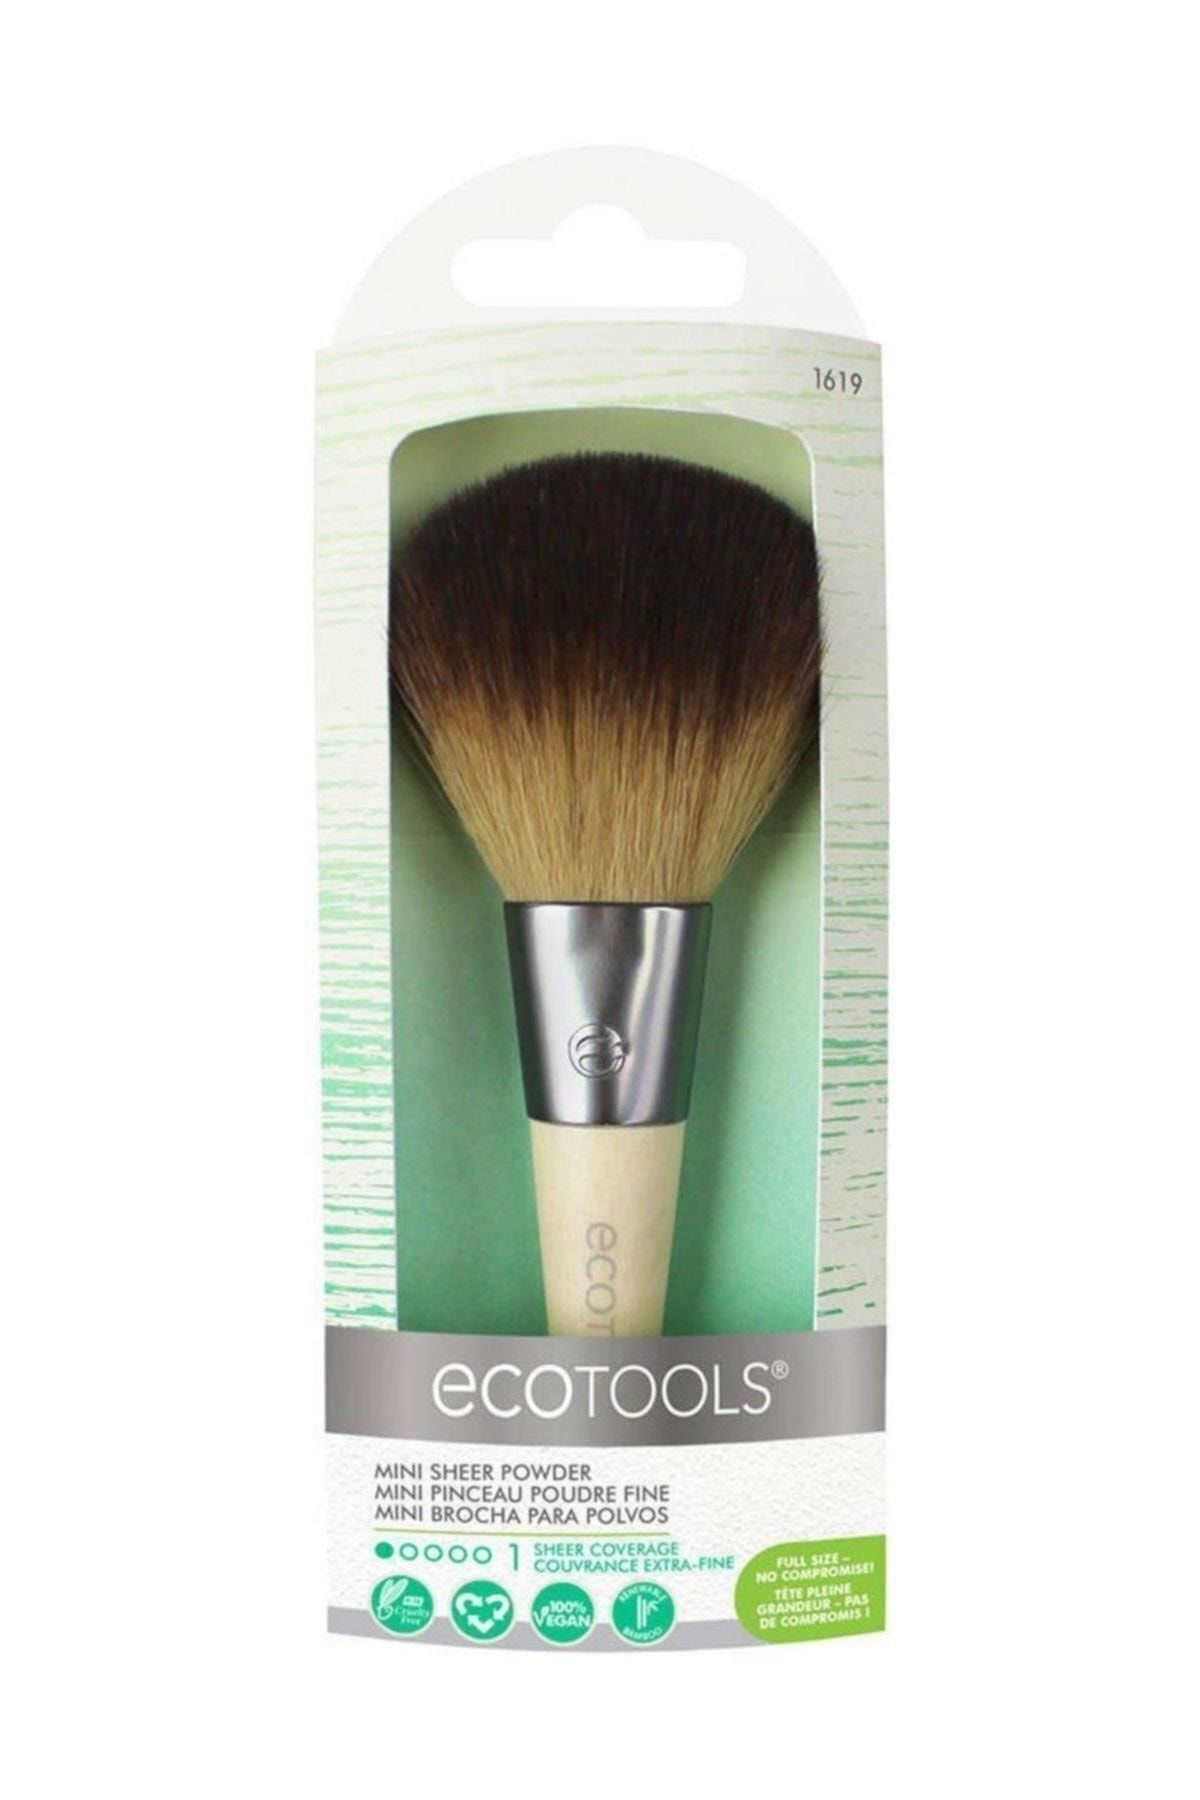 Ecotools Mini Sheer Powder / Ec-1619